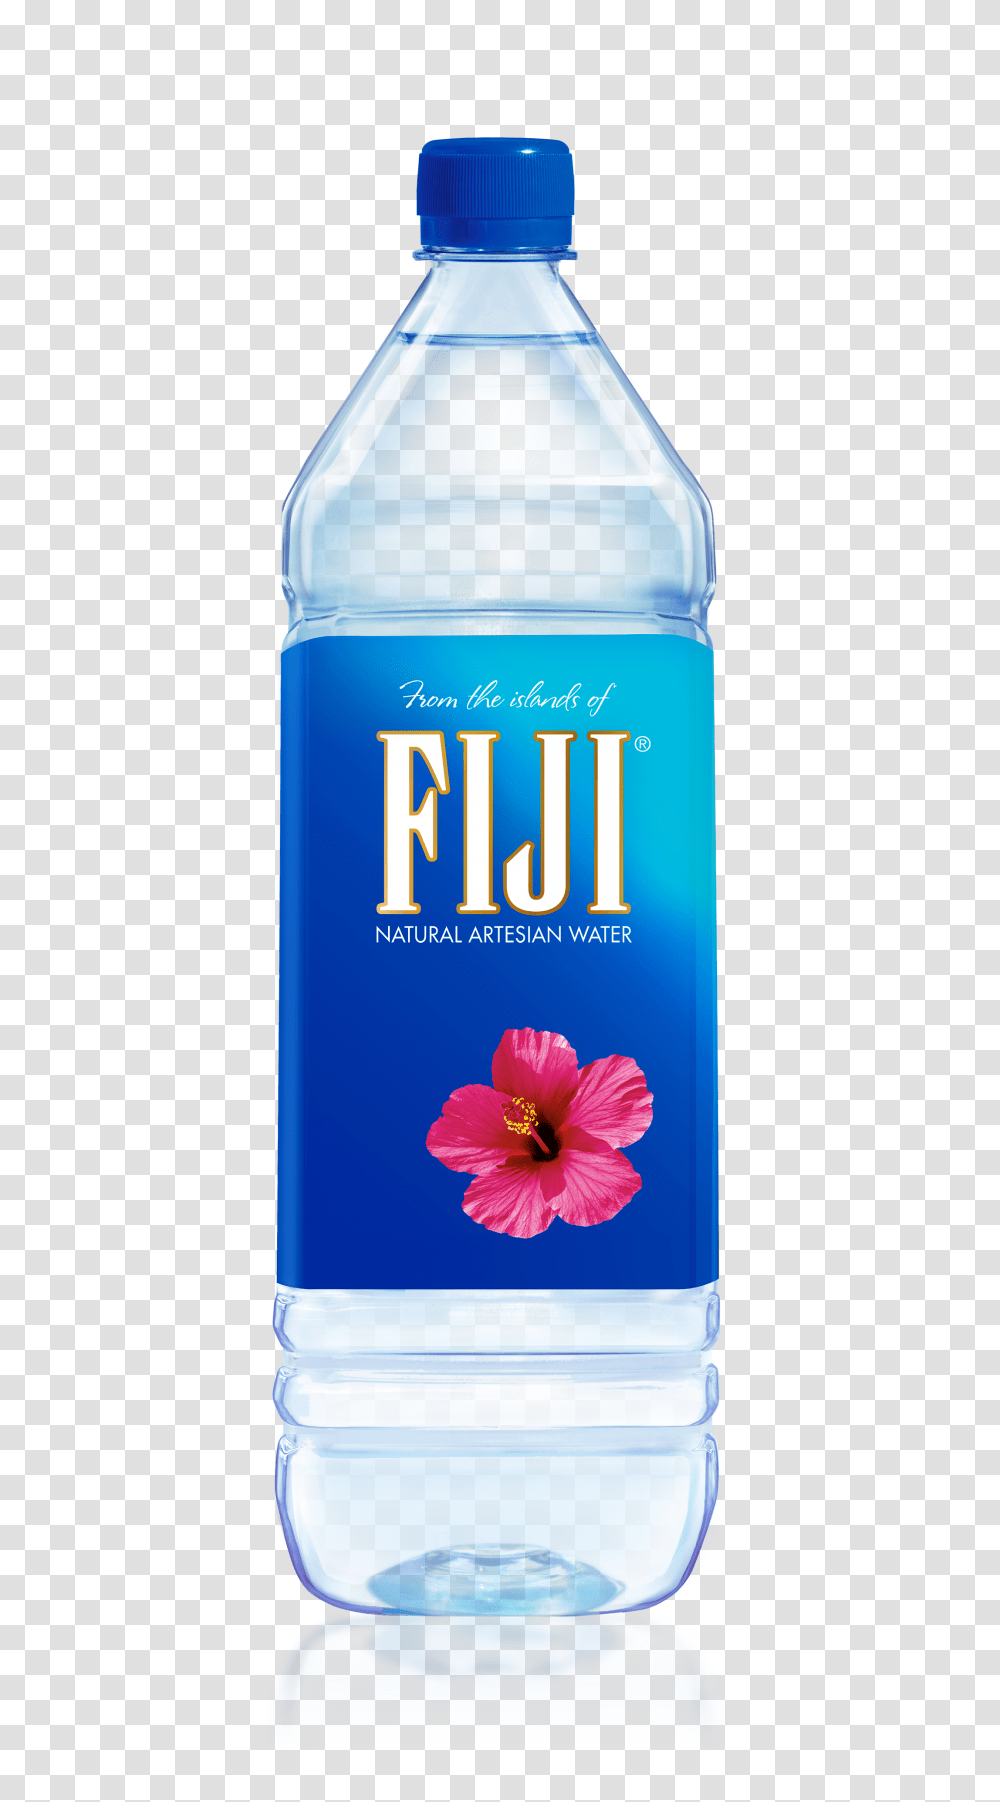 Fiji Natural Artesian Water Fl Oz Count, Bottle, Beverage, Drink, Water Bottle Transparent Png